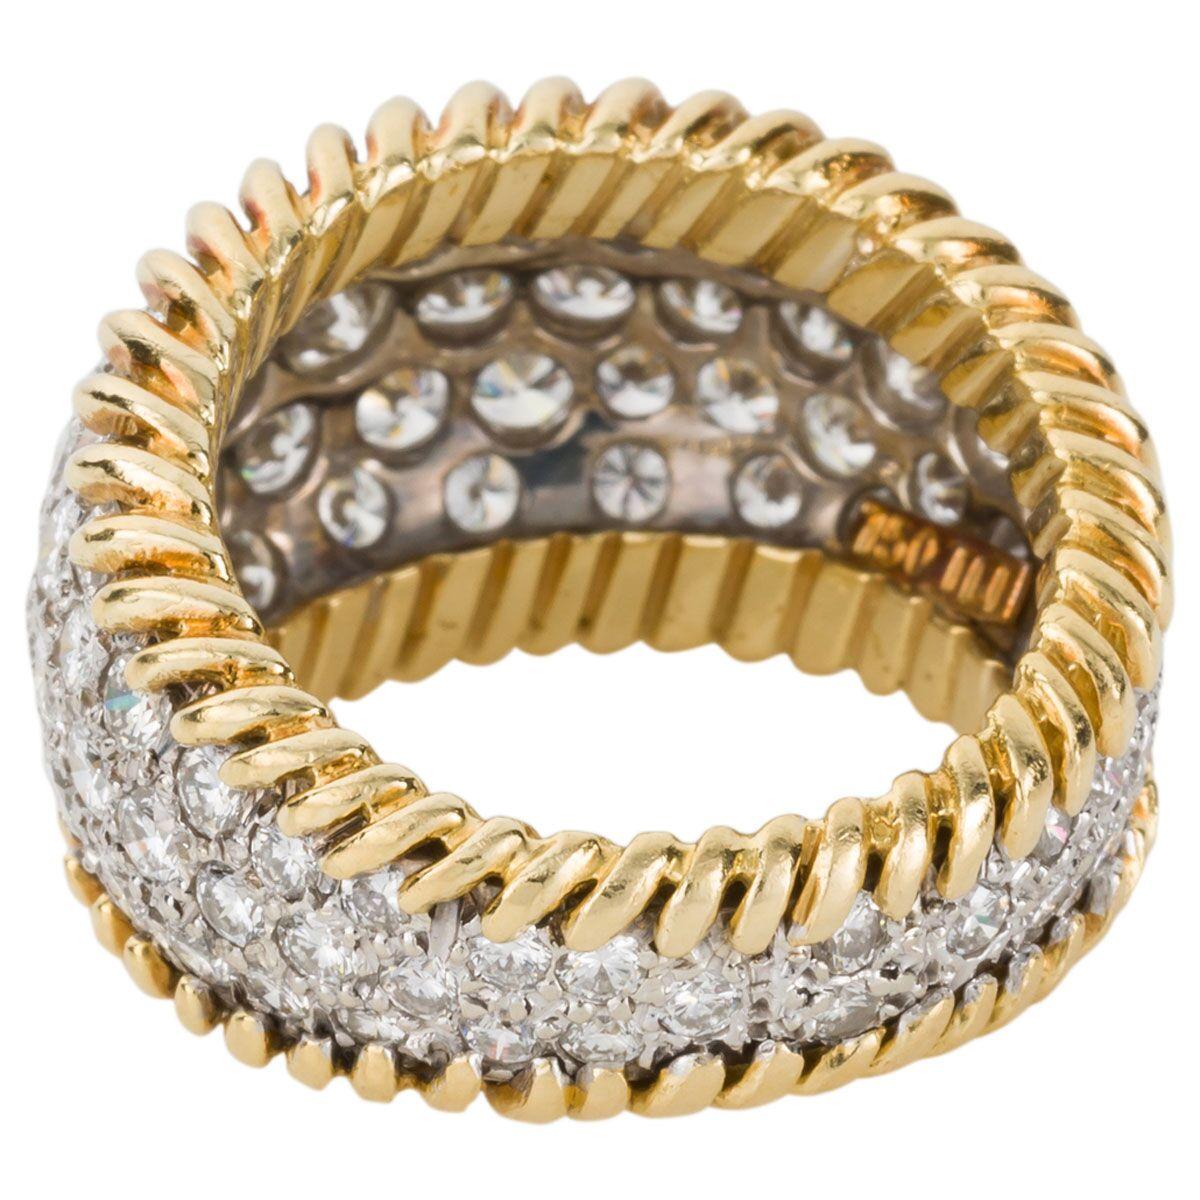 Round Cut 3.00 Carat Diamond Pave Set & 18 Karat Yellow Gold Ring - Ring Size 5.5